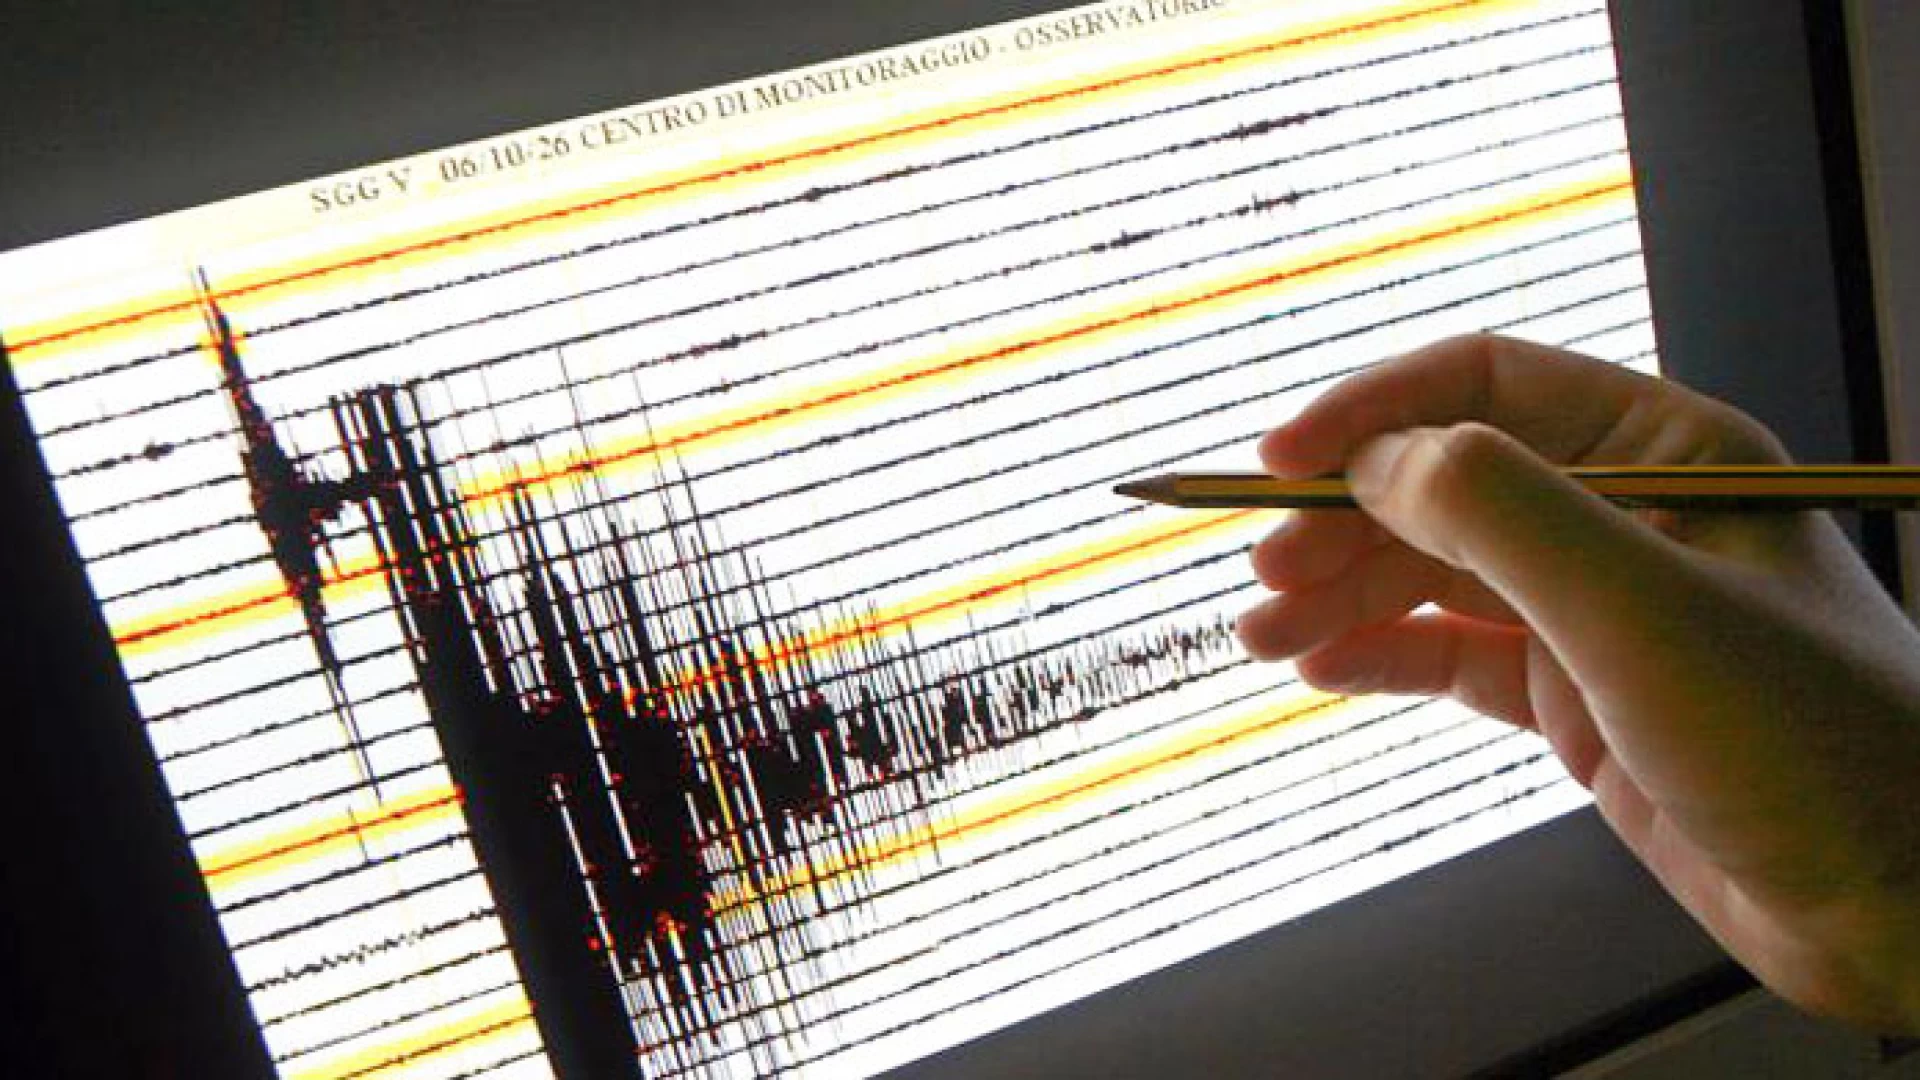 Lieve scossa di terremoto in Molise. Epicentro Roccasicura con magnitudo 1.4. Avvertita anche la scossa del Gargano